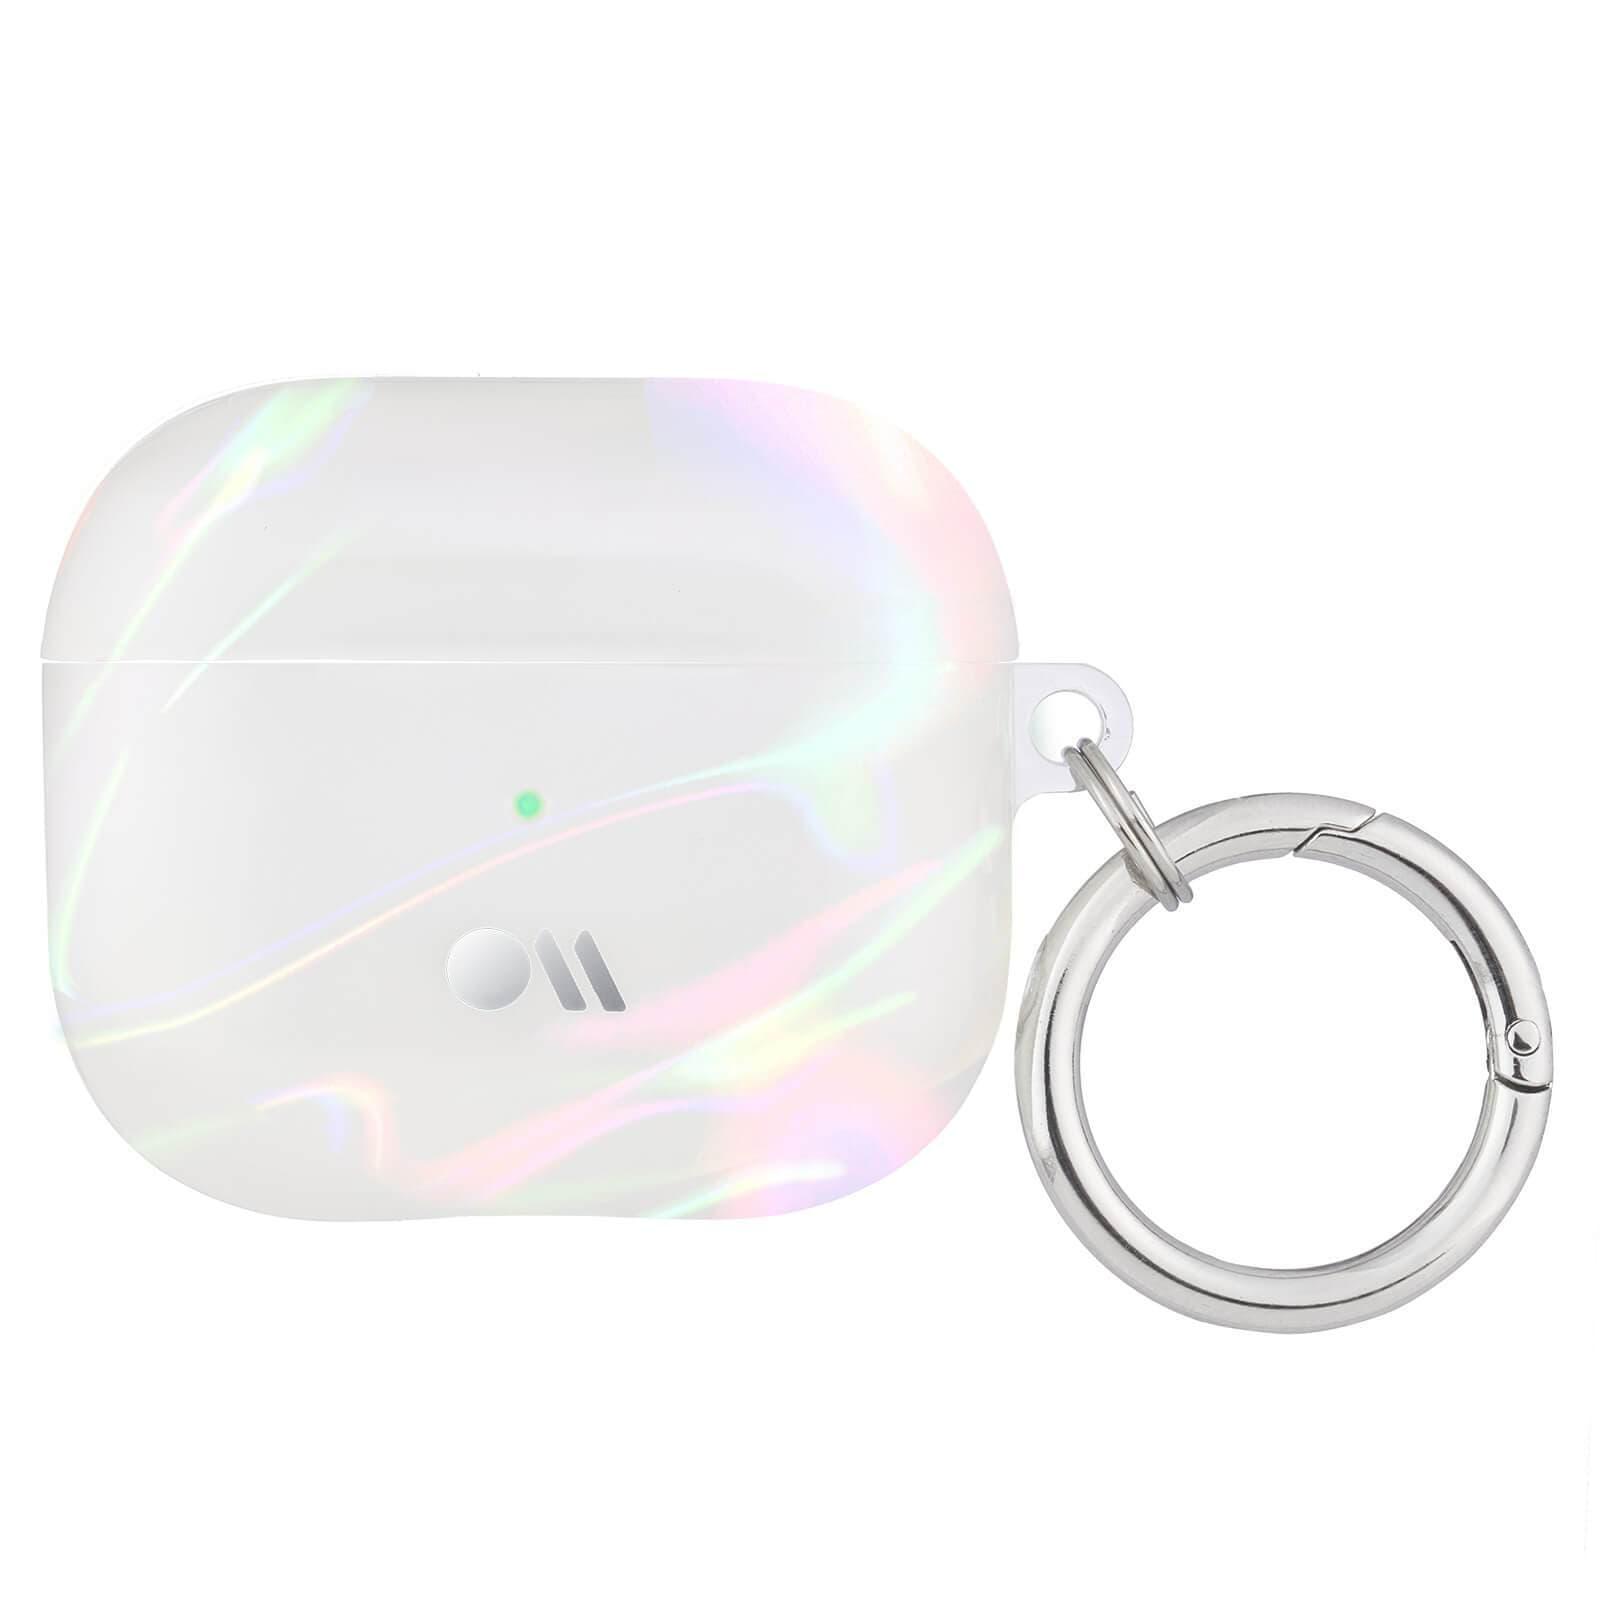 كفر سماعات لاسلكية مع مشبك للتعليق - لؤلؤي -  Apple Airpods 3rd Gen Case - Soap Bubble Design, Lightning Port Access, Circular Ring Clip, Precision Molded Fit, Wireless Charging Compatible - Case mate